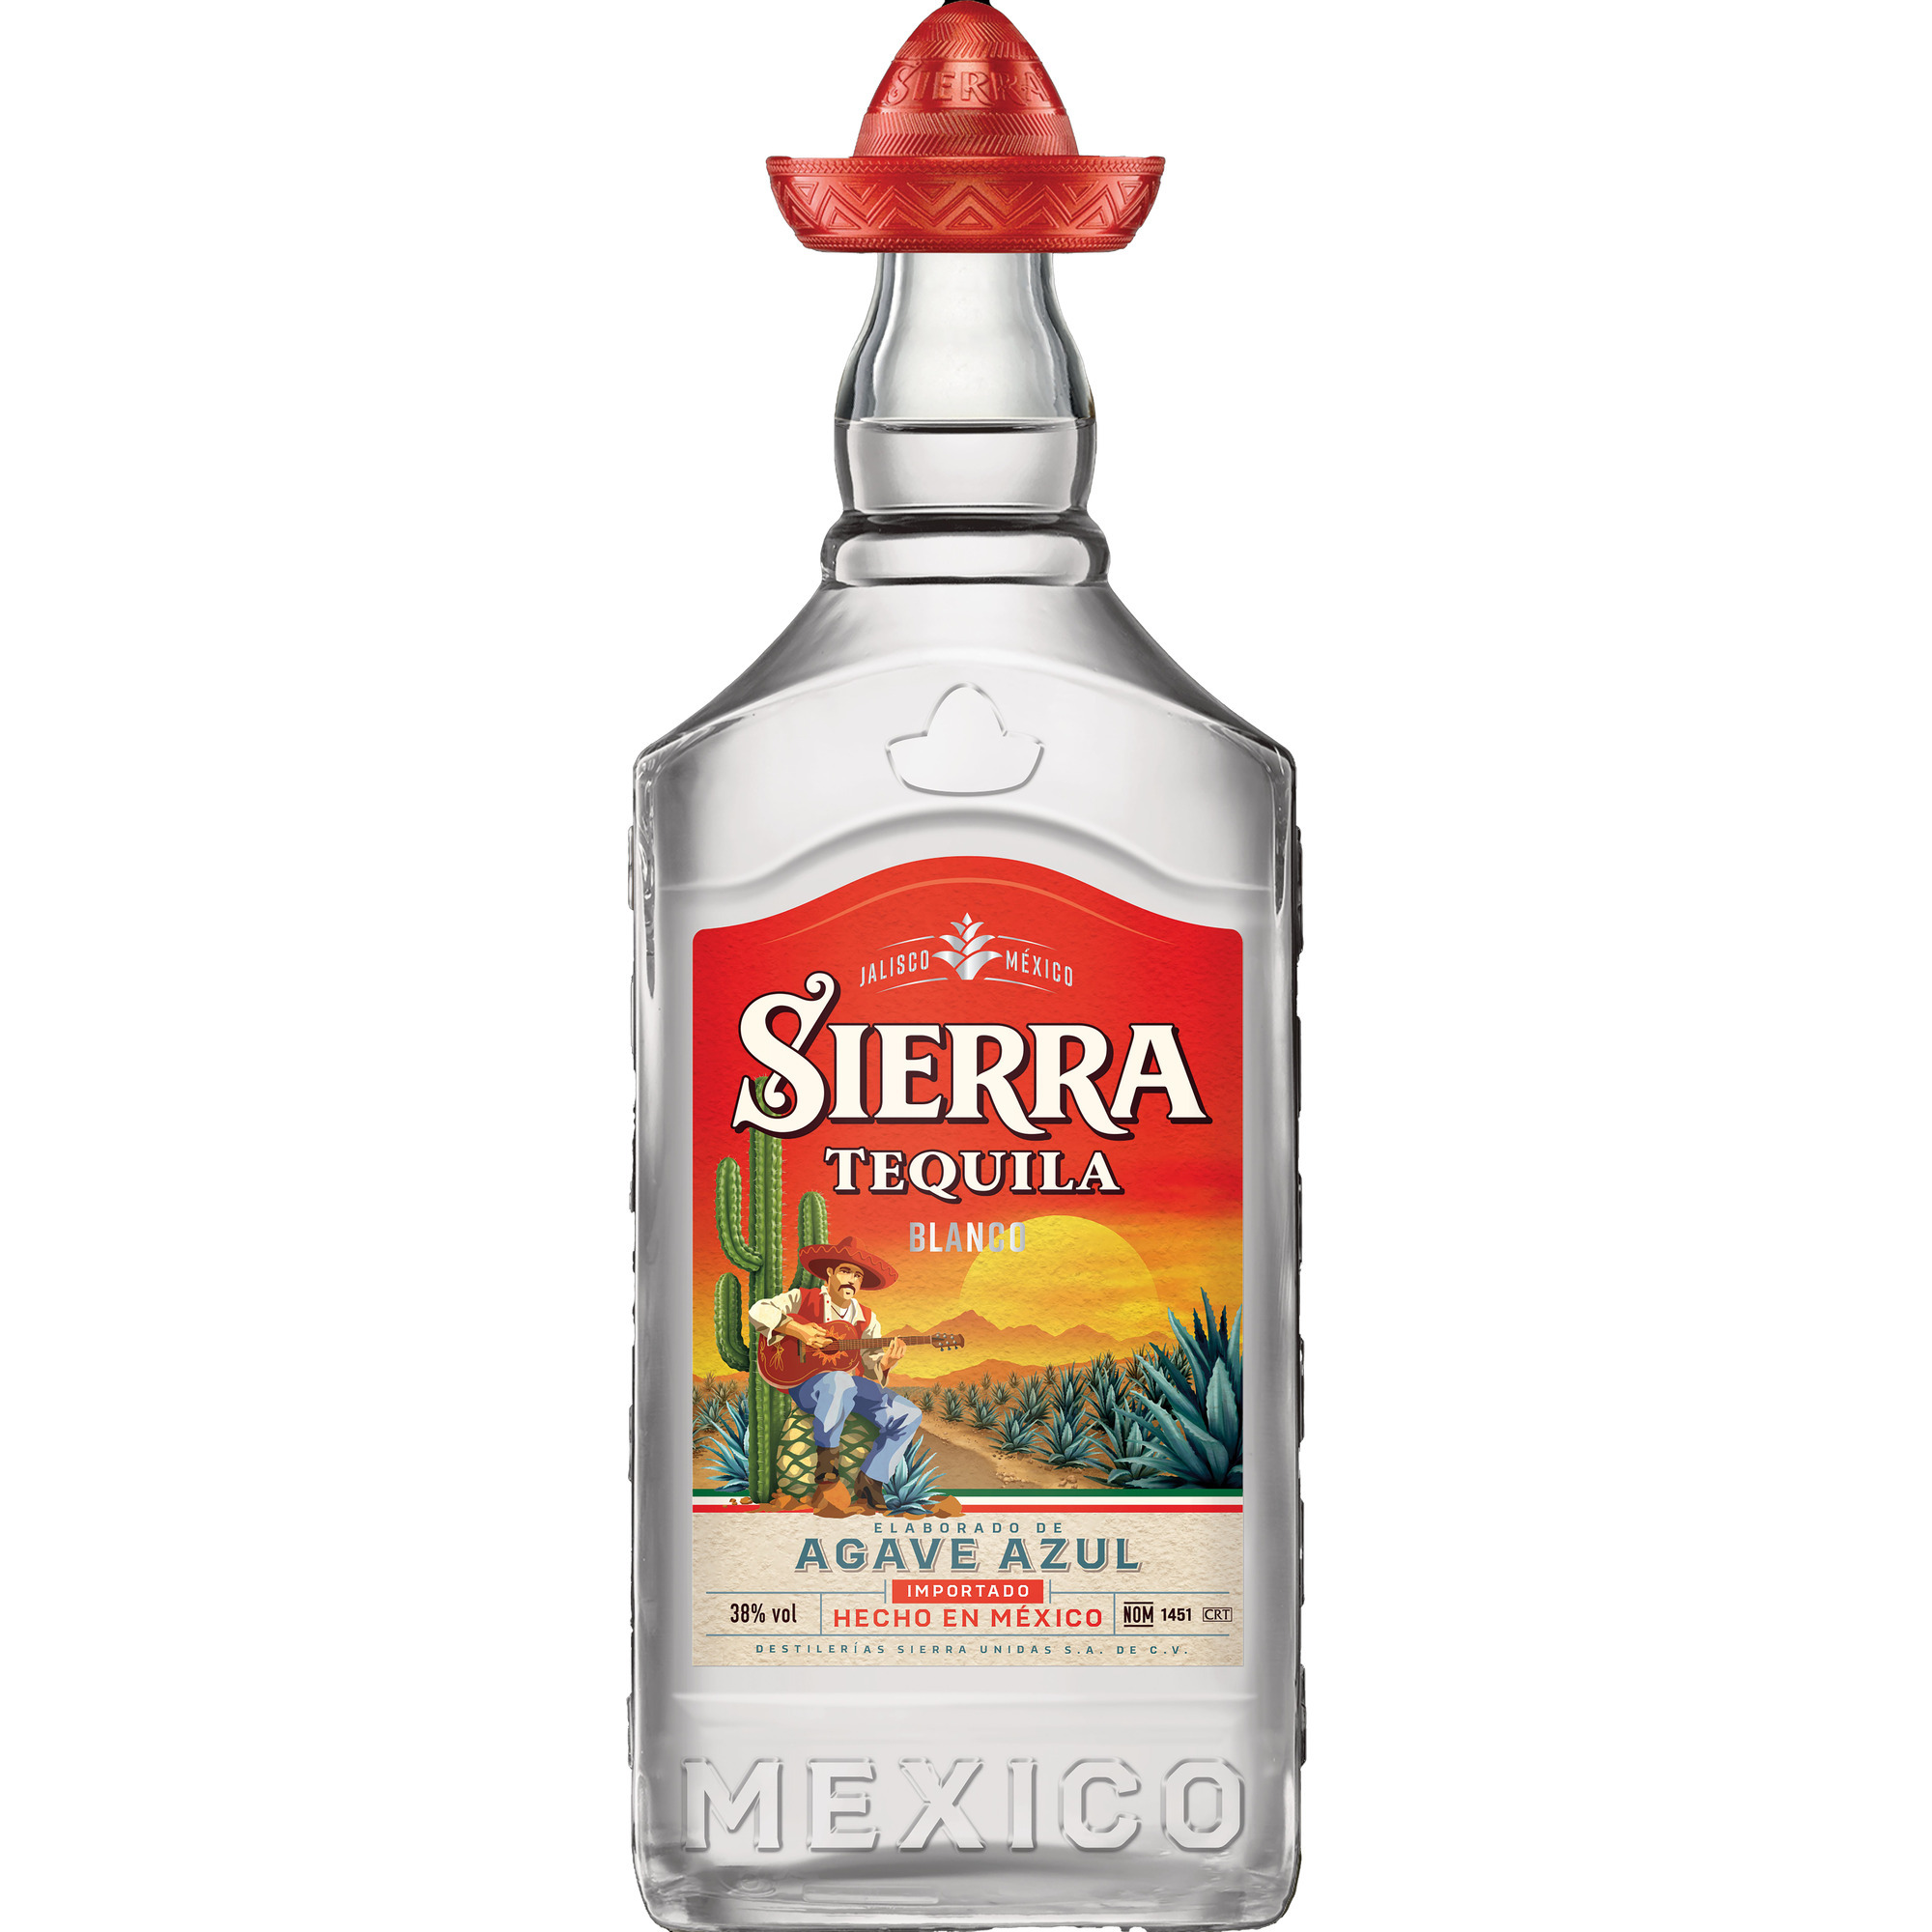 Sierra Tequila 38 %0,7l, Blanco